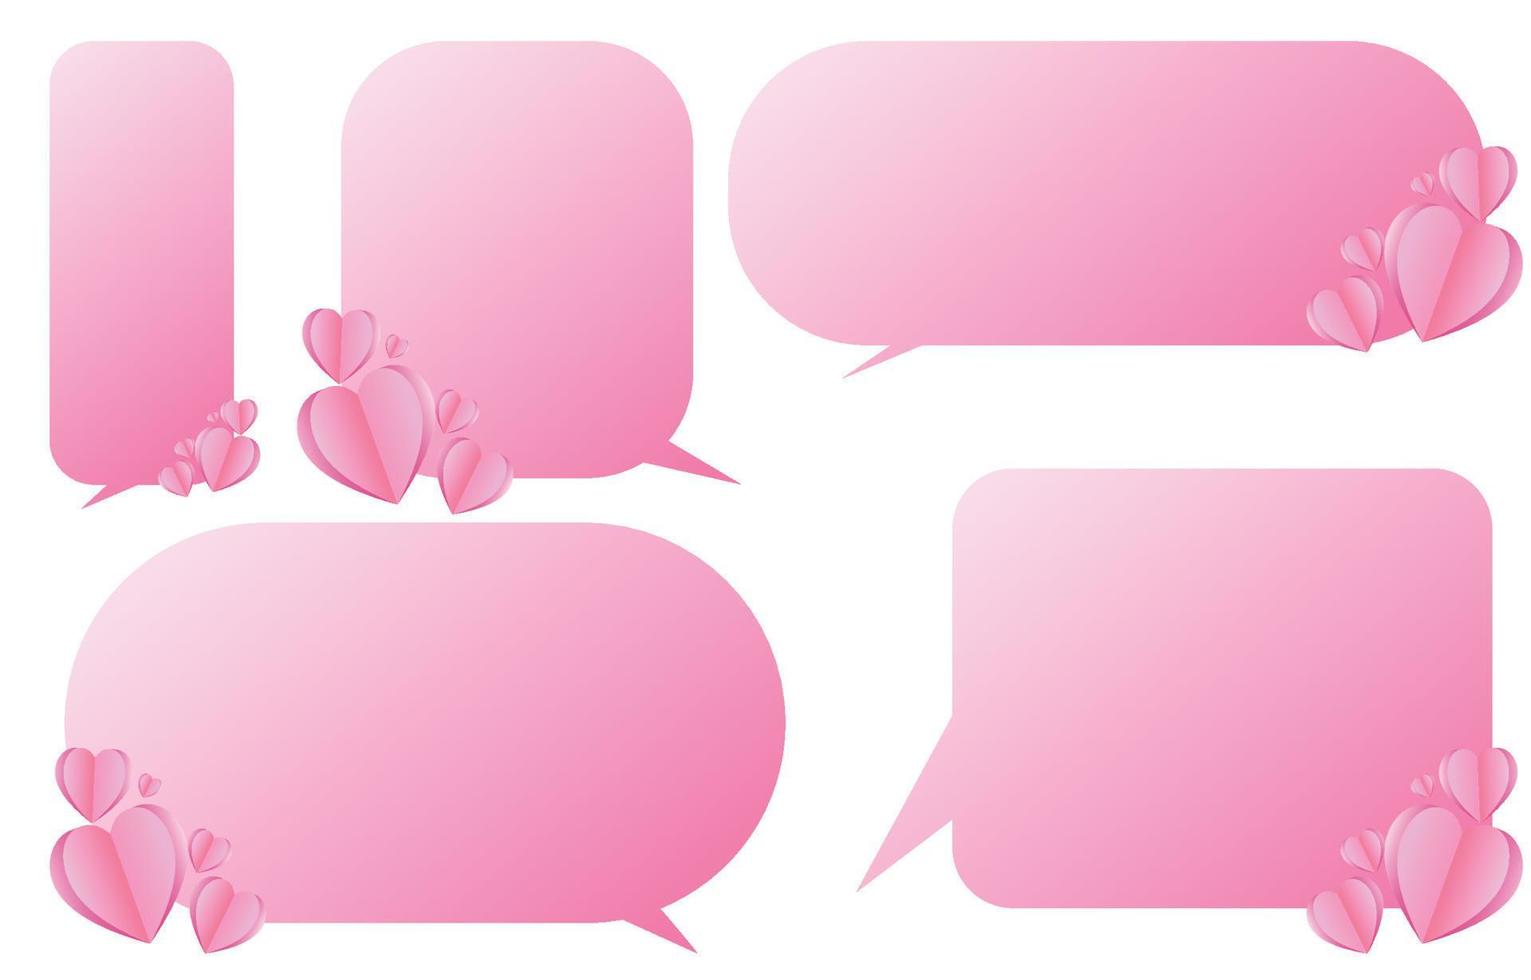 set van decoratieve roze tekstballonnen met hartjes, spreken en praten communicatie en gesprek geïsoleerd op witte vectorillustratie, Valentijnsdag concept vector